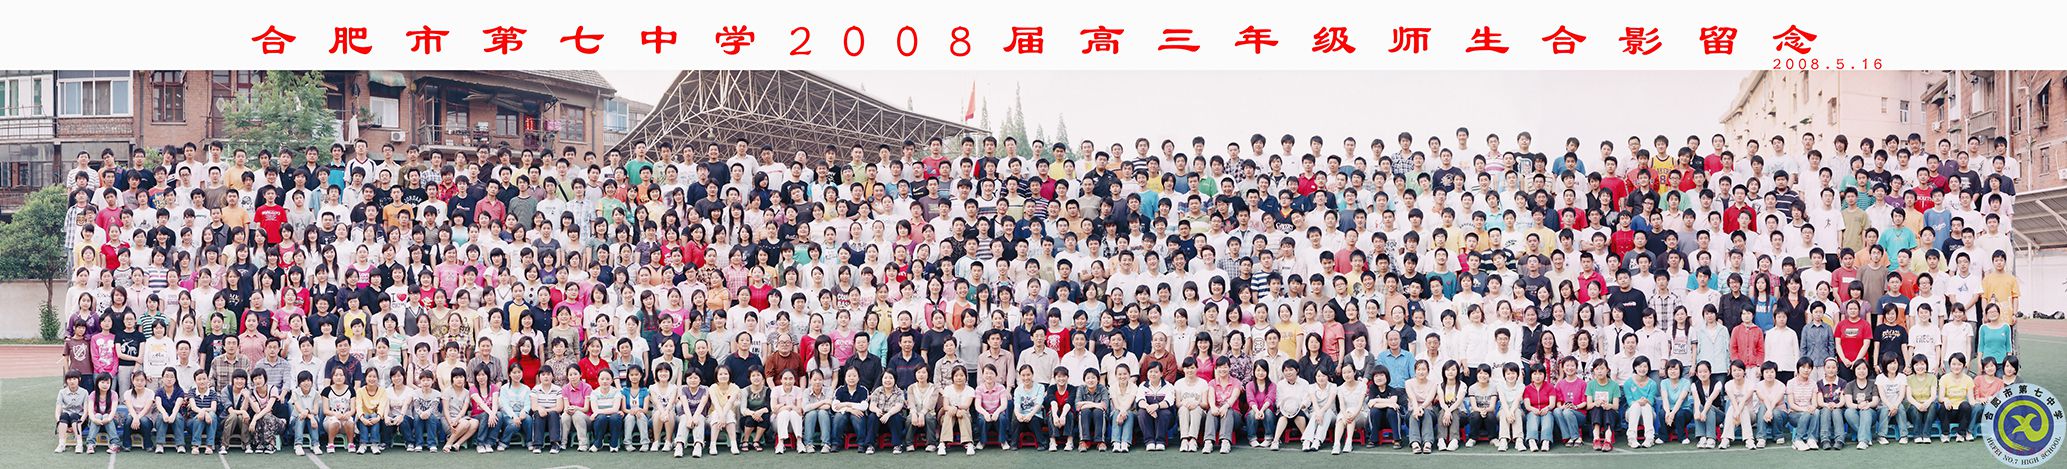 合肥七中2008届大合影.jpg